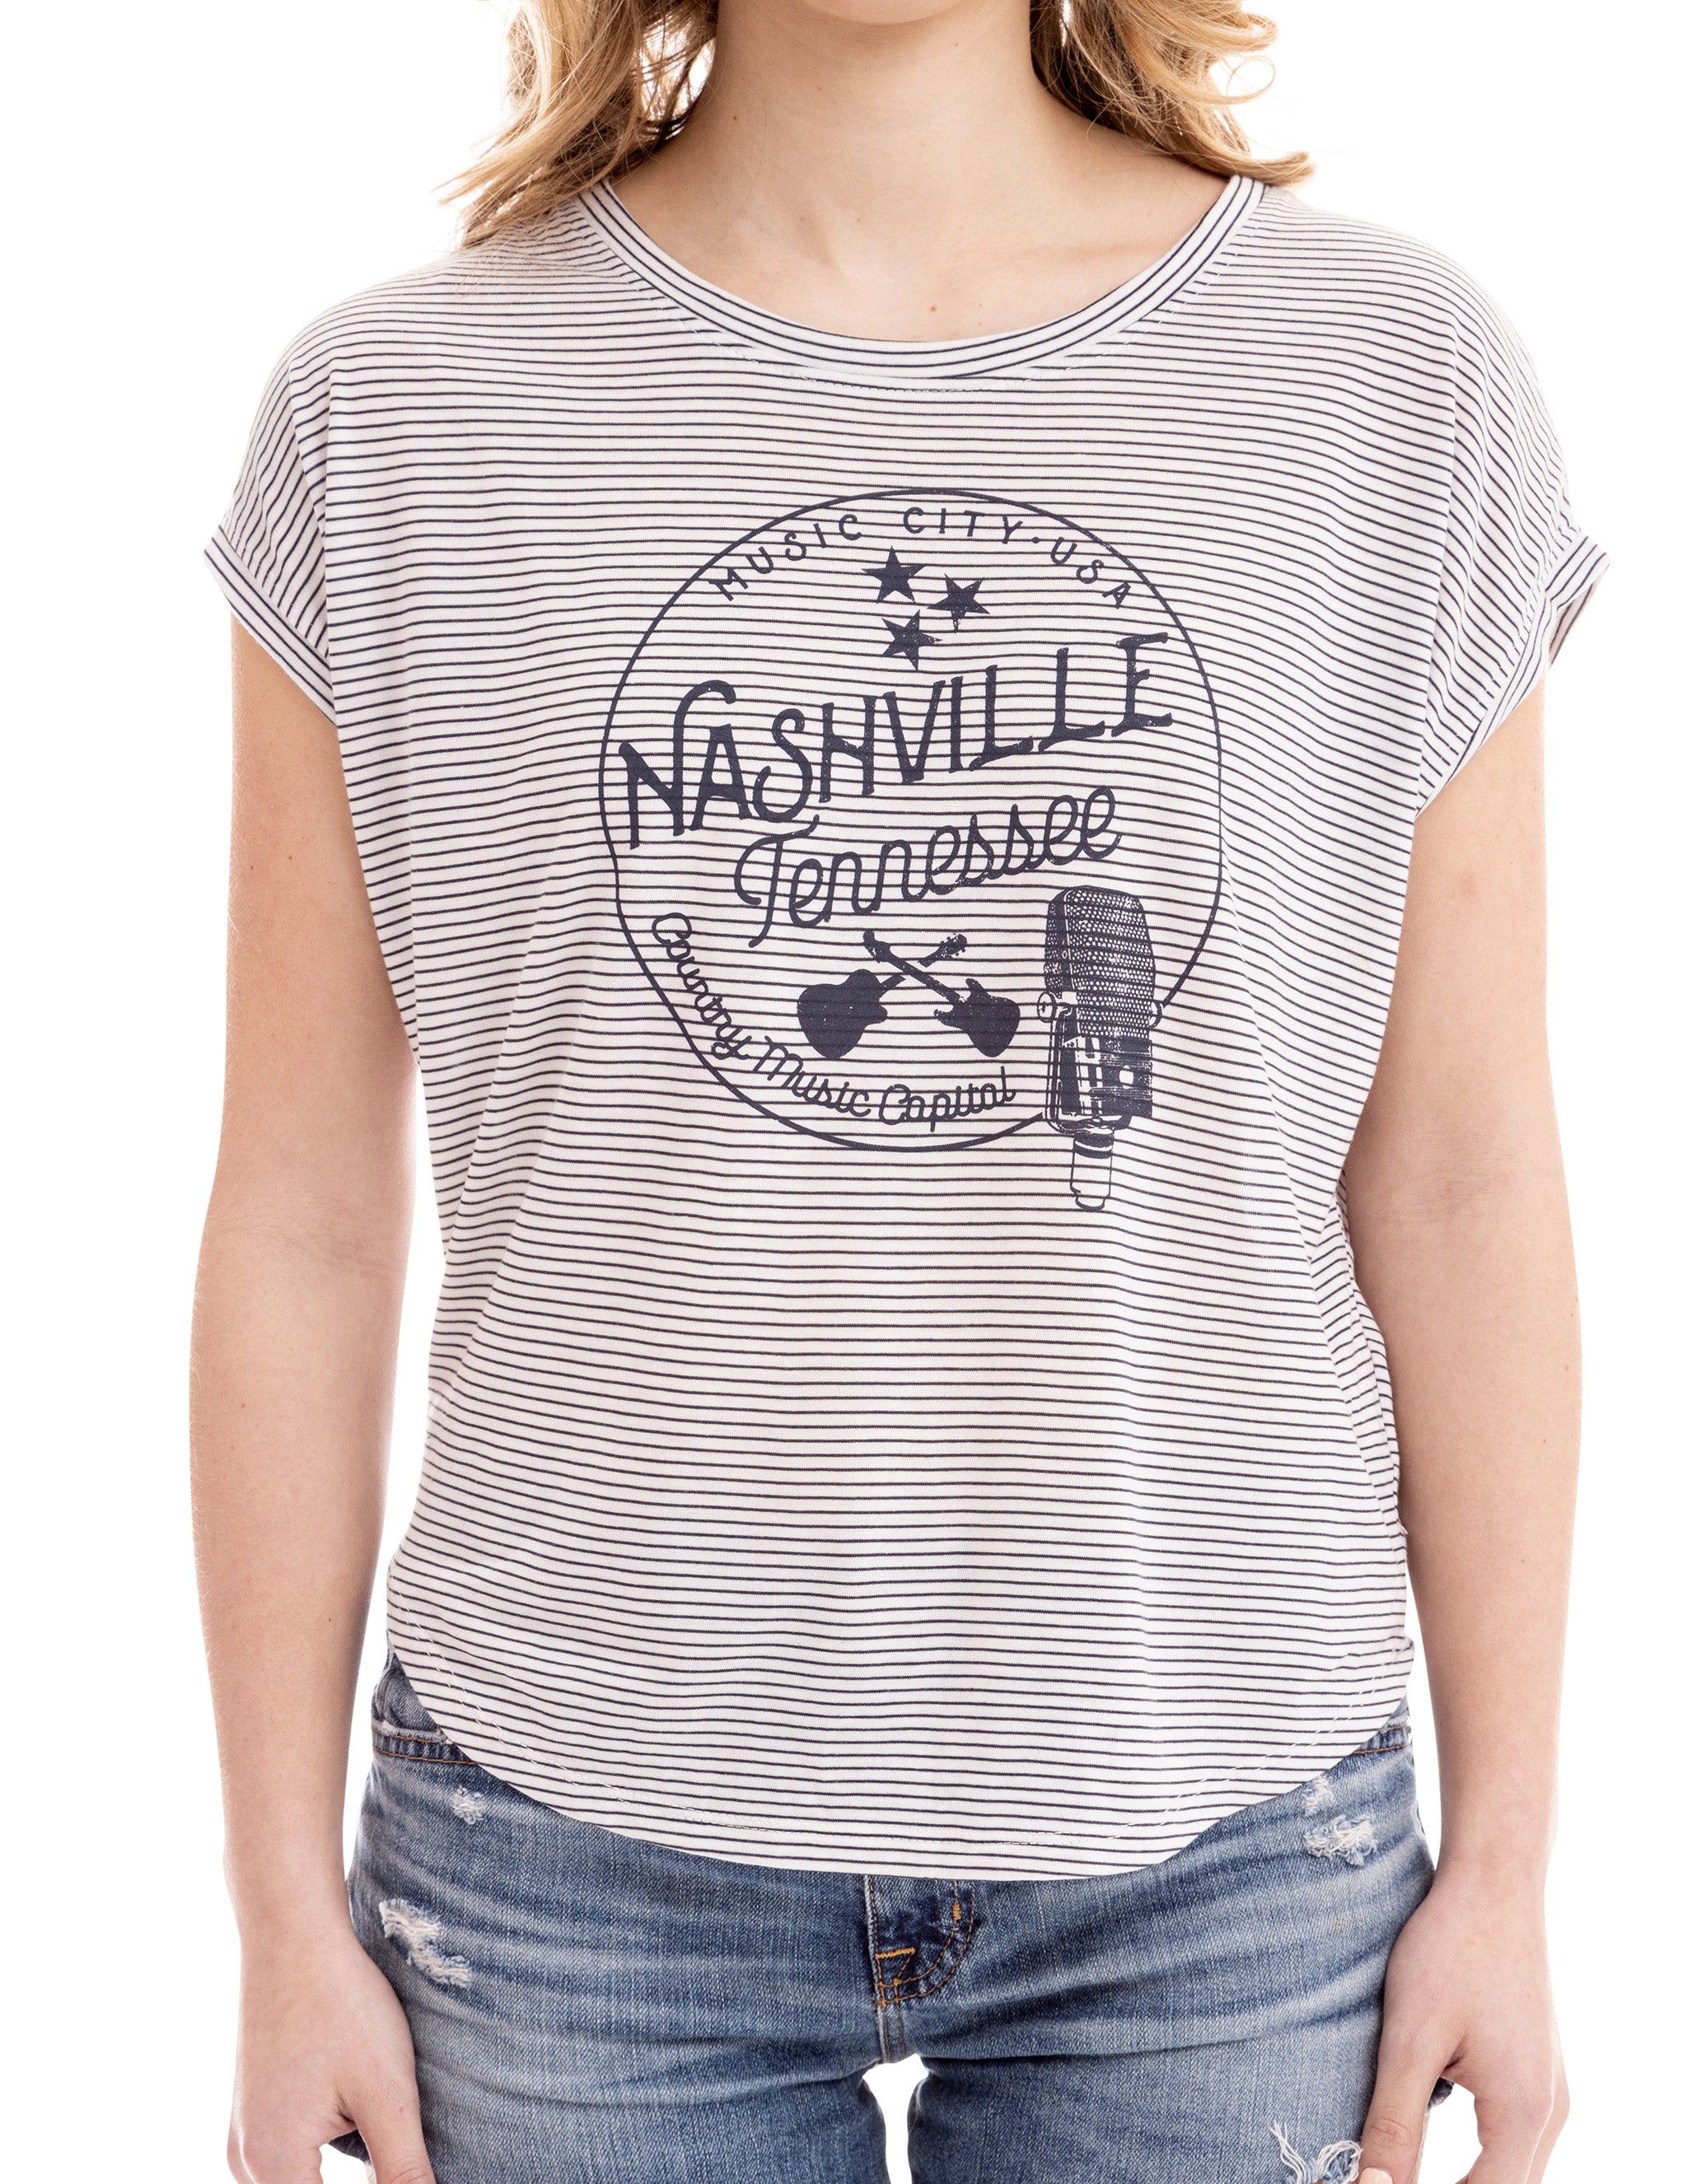 Ryman Nashville Mic Circle T-Shirt